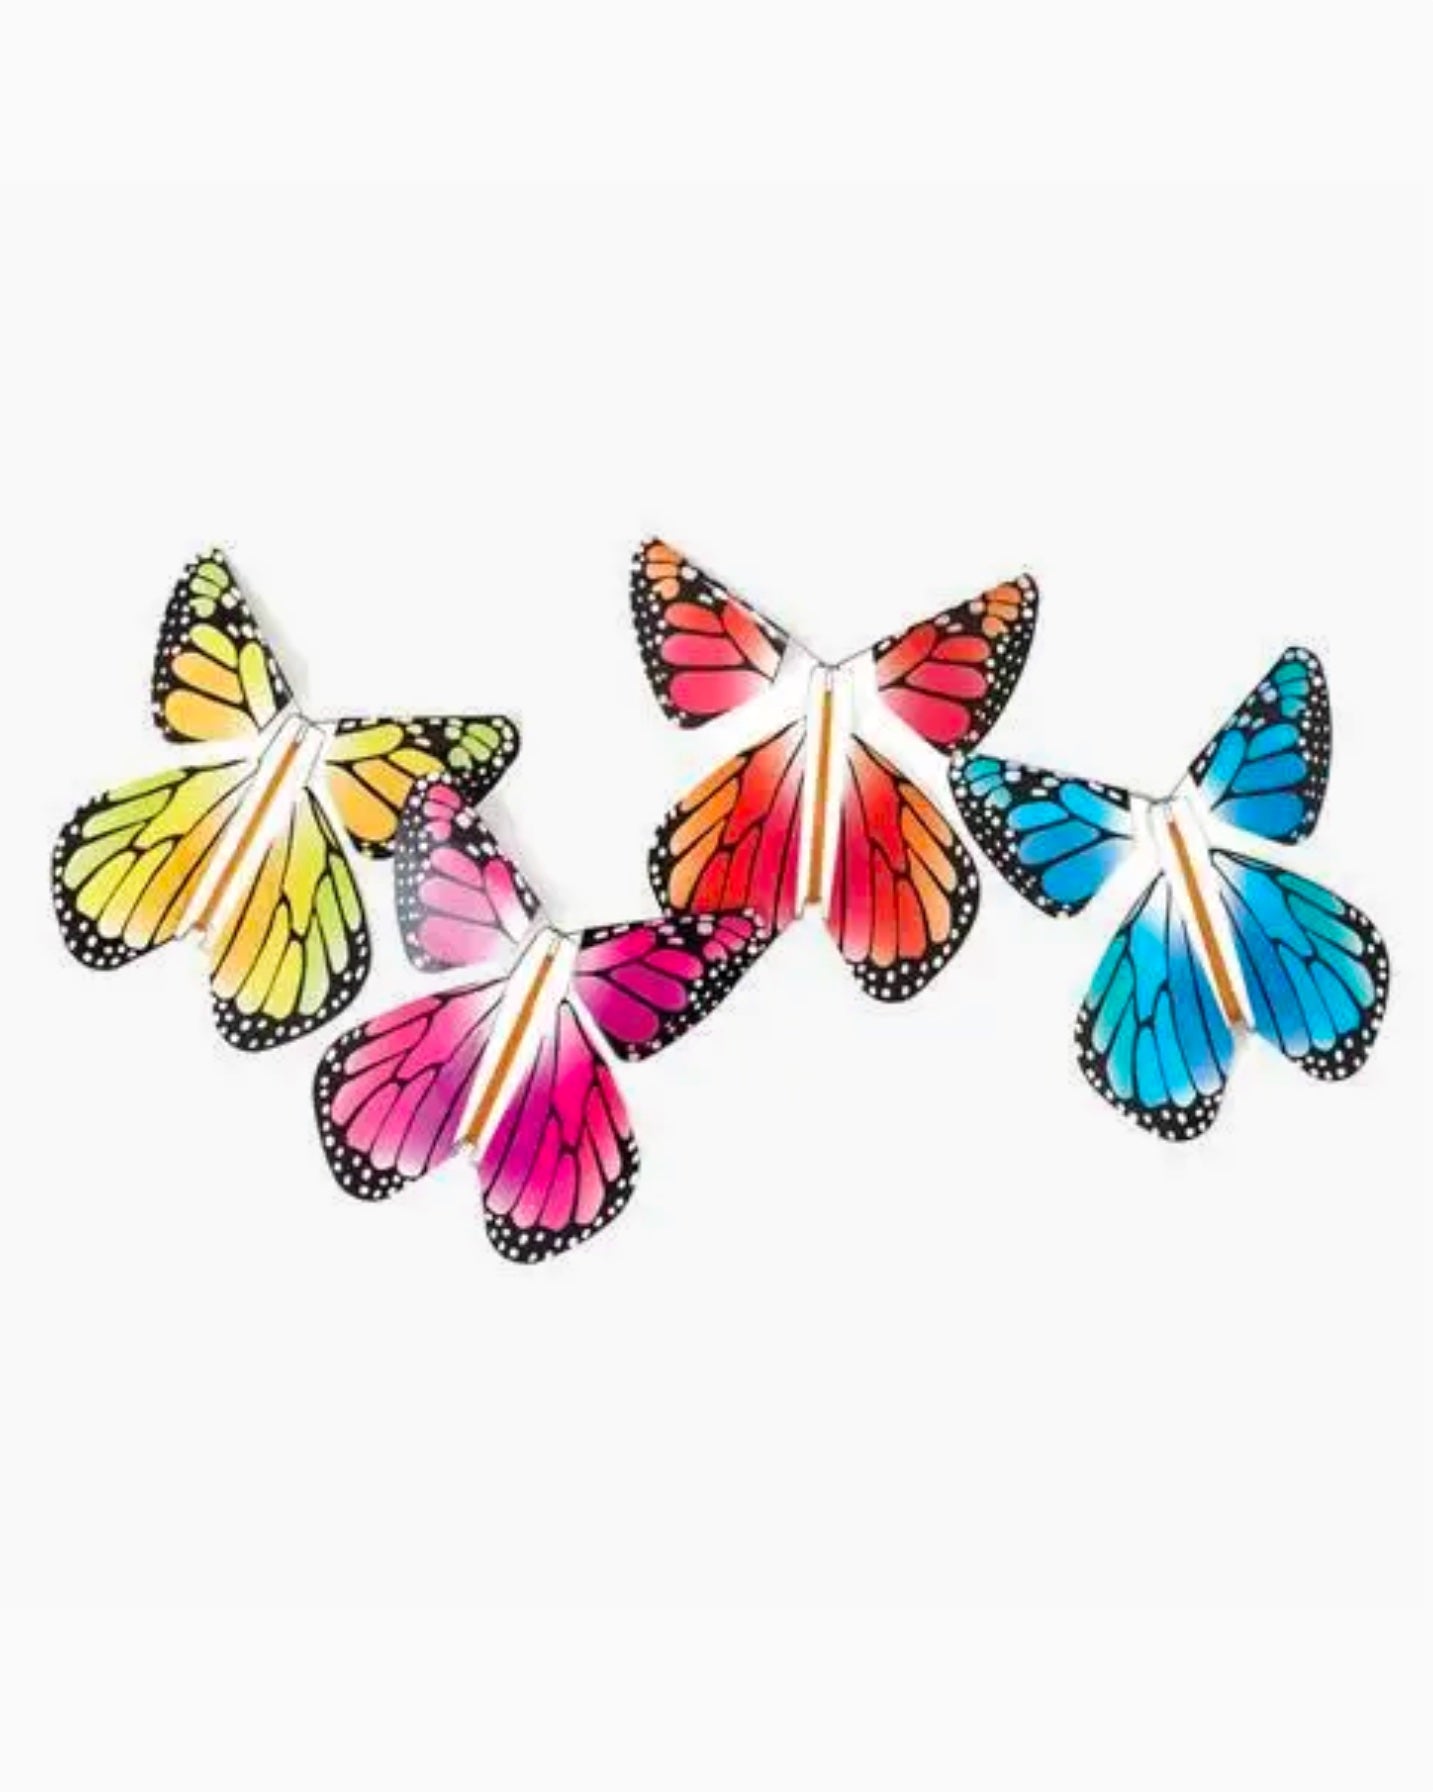 Magical Butterfly Sticker Set